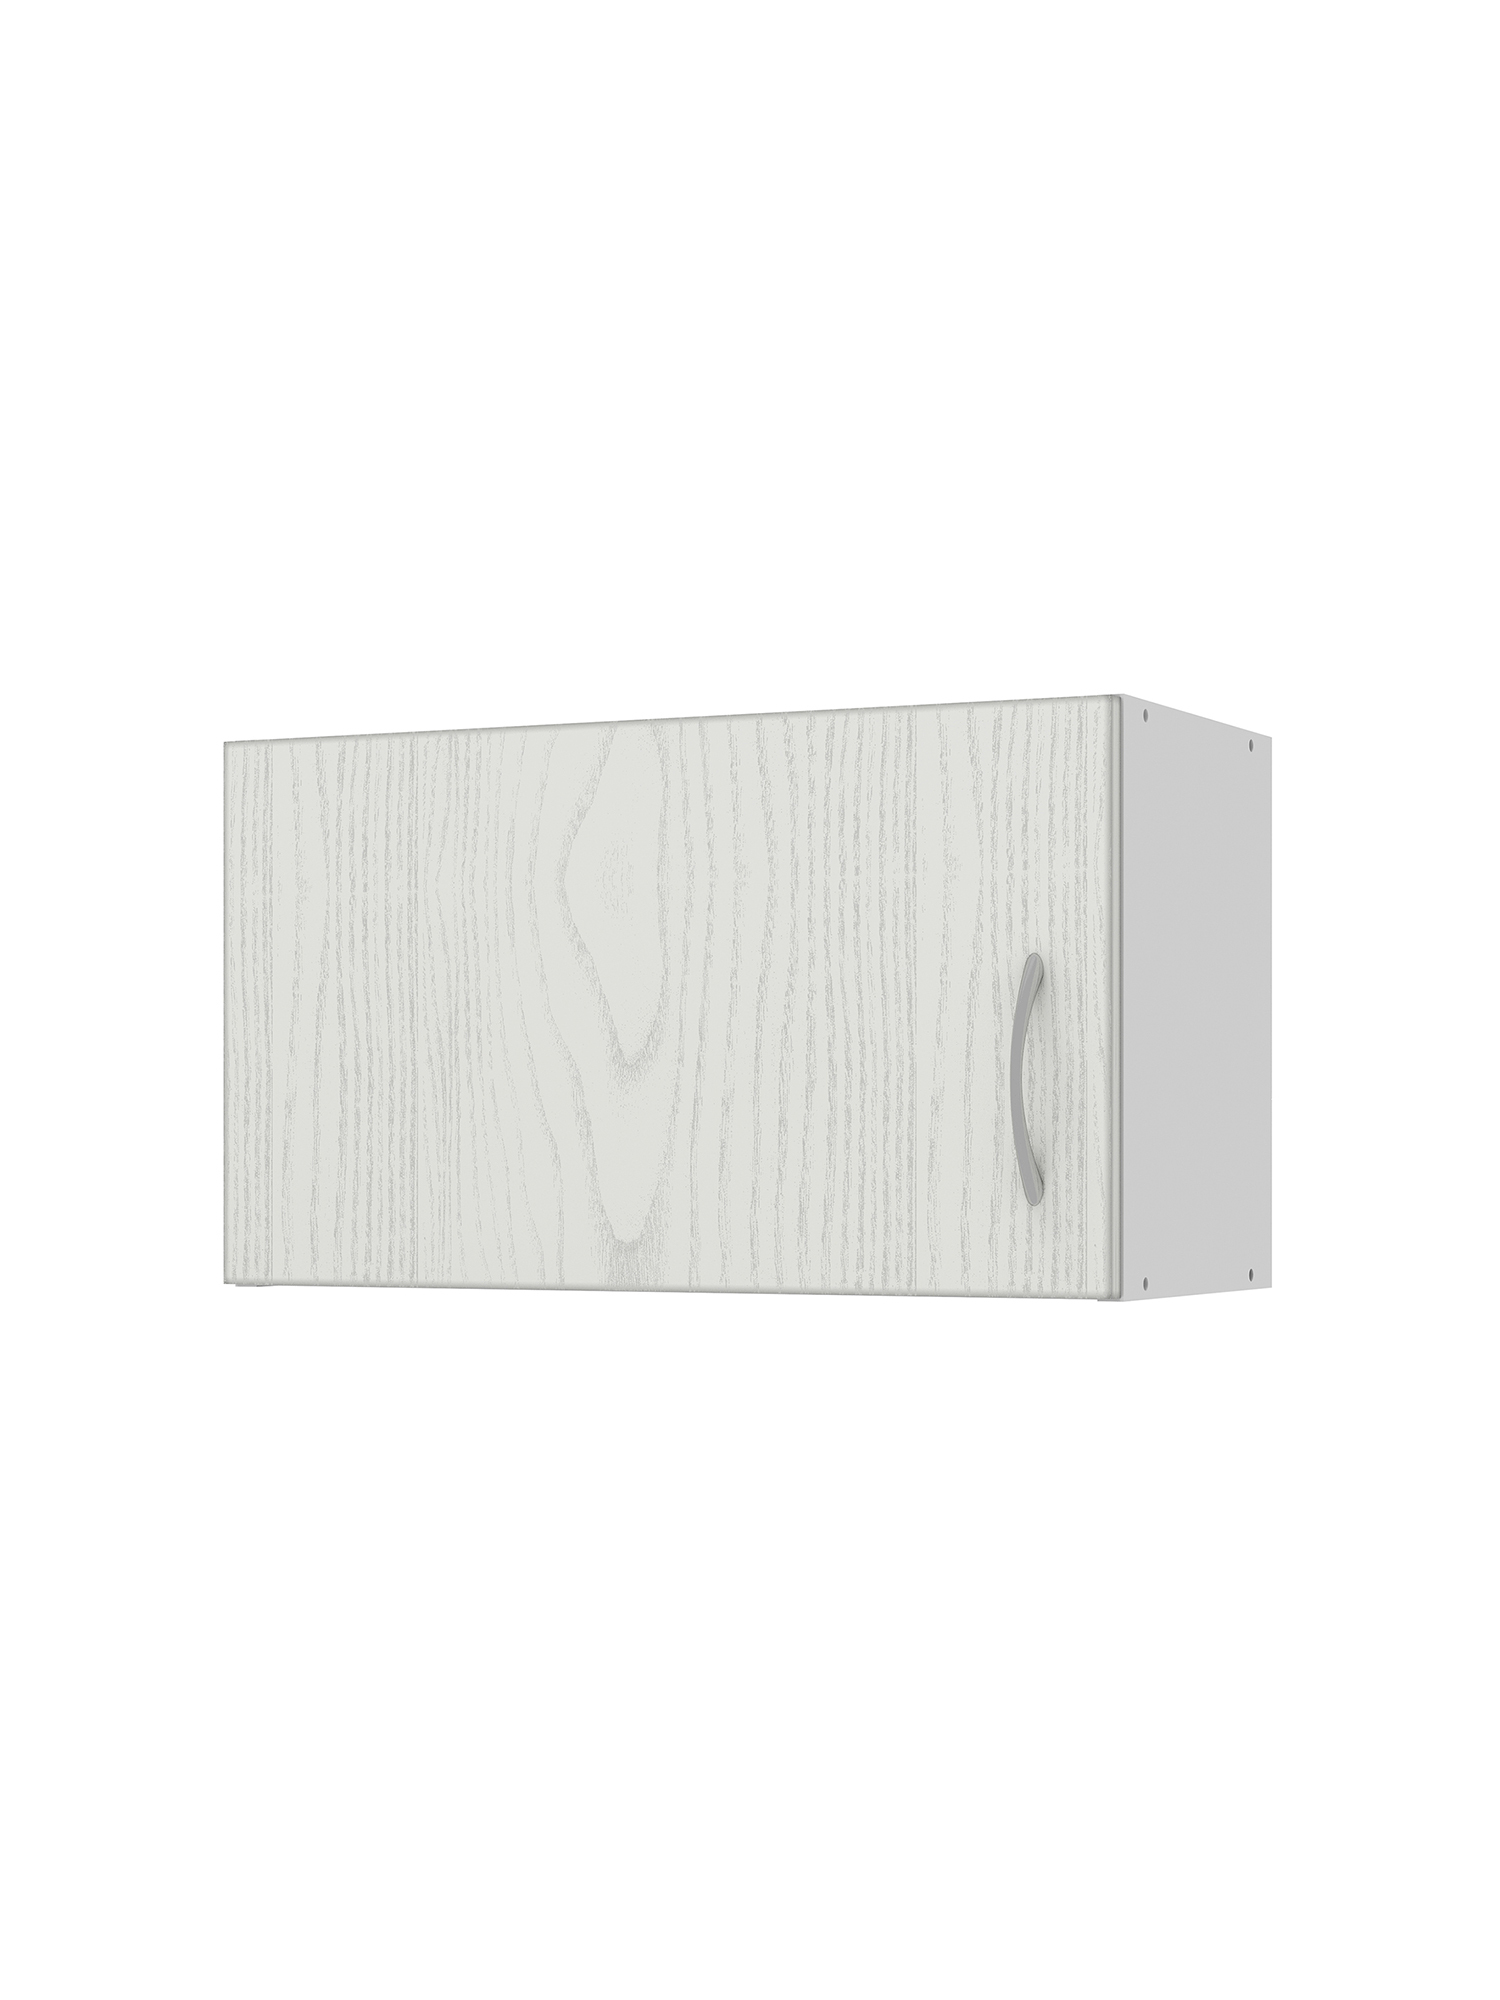 Шкаф навесной Beneli Рондо для вытяжки ясень патина серебро/белый 60 см